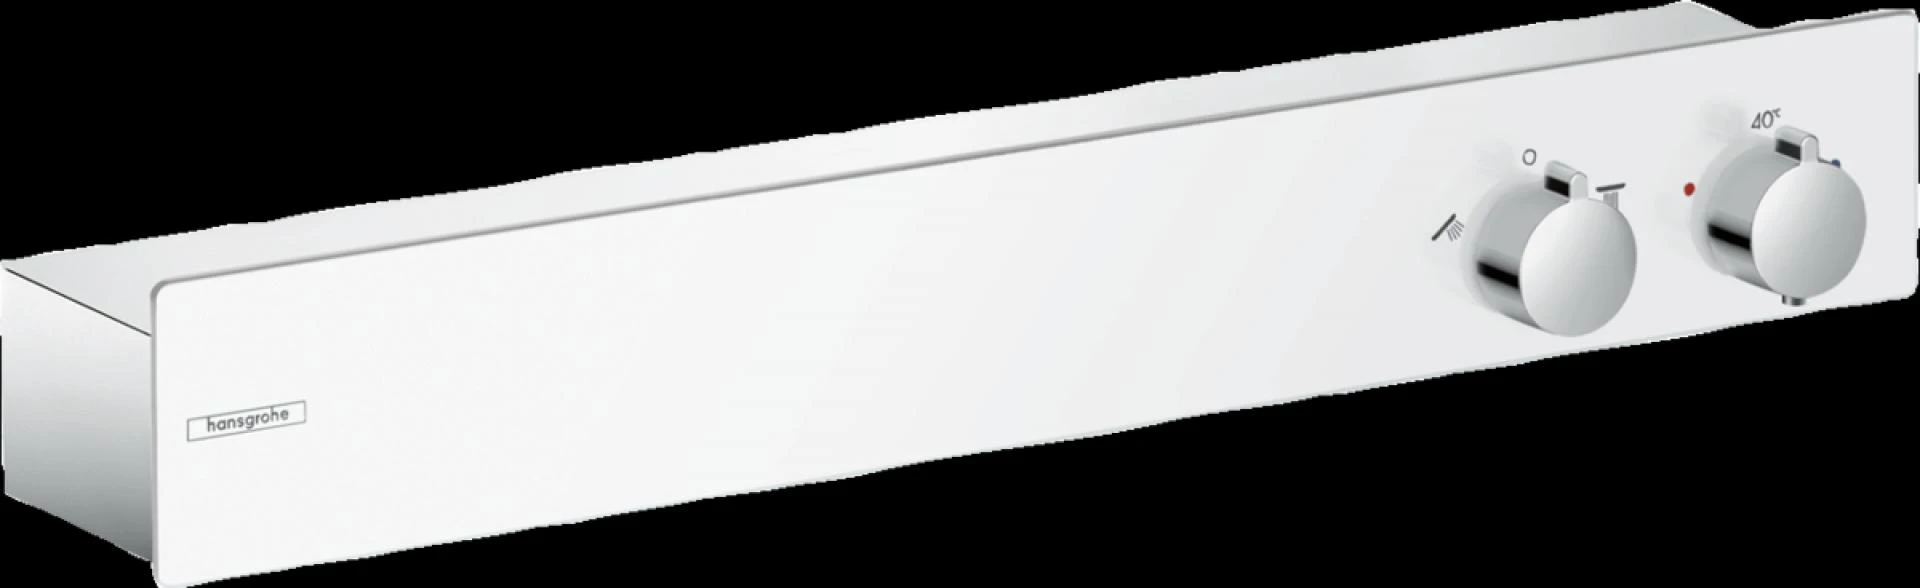 Фото - Термостат для душа Hansgrohe ShowerTablet 13108400, белый хром - Hansgrohe